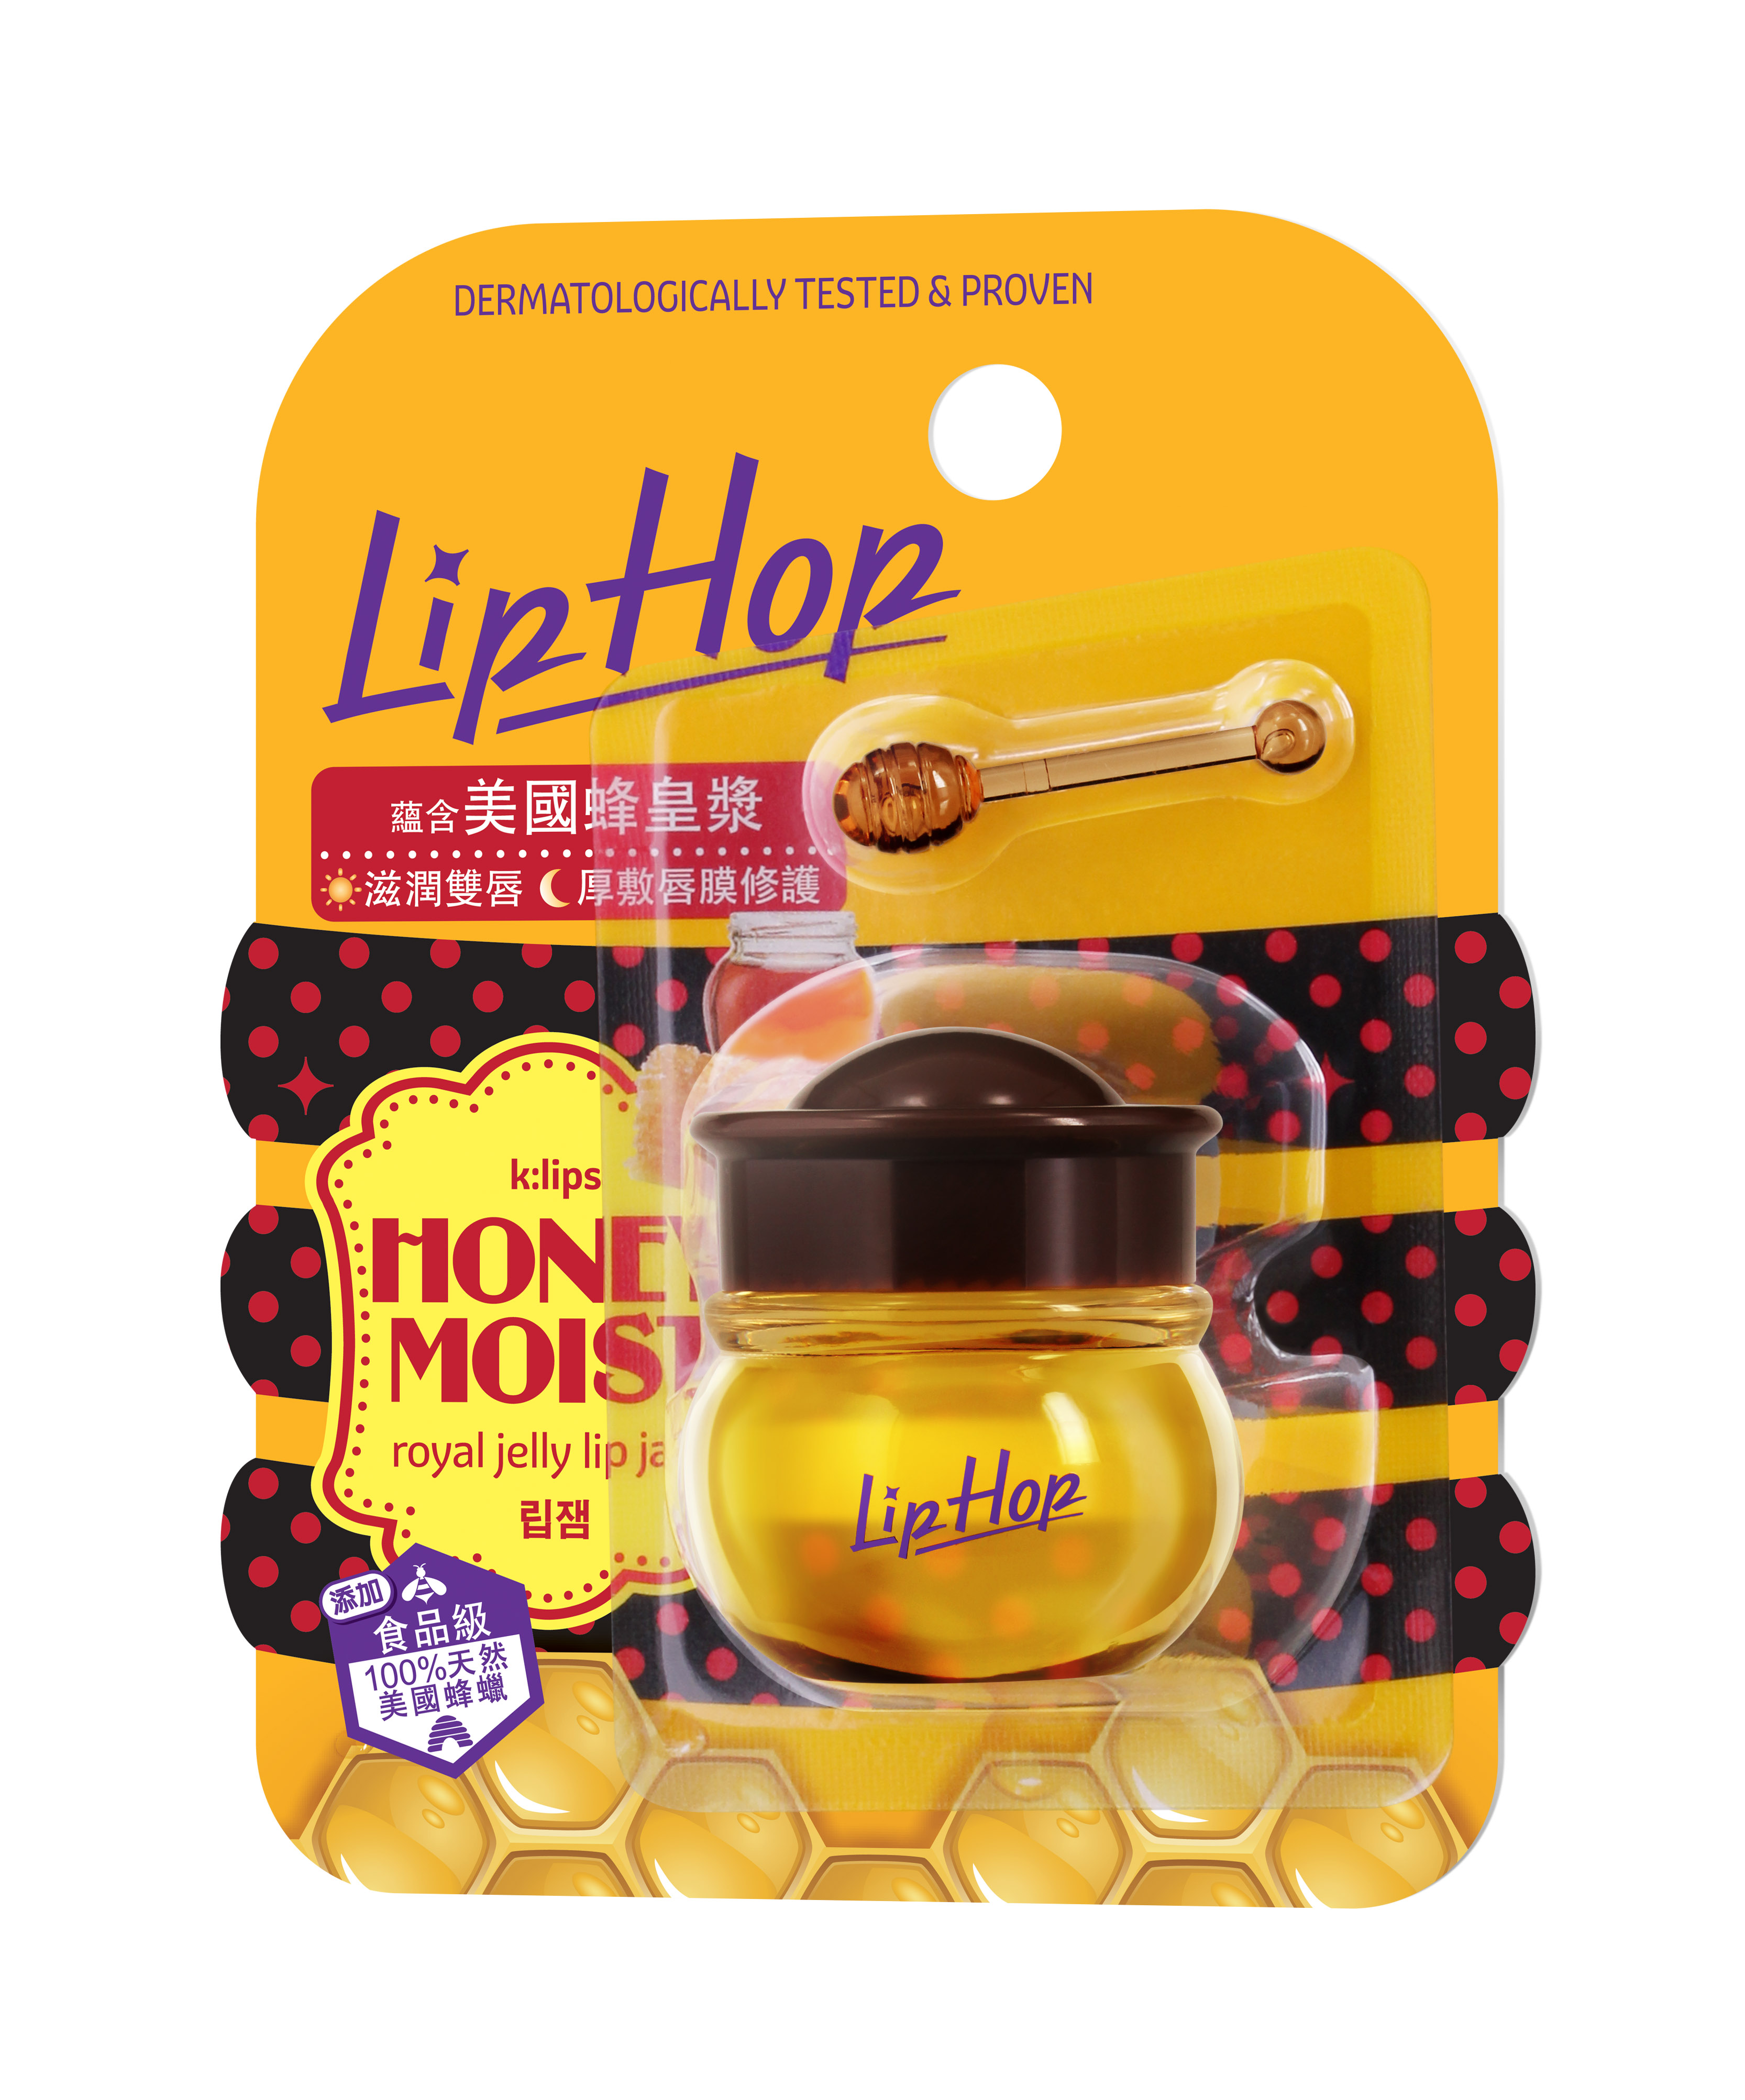 LipHop Honey Moist 蜂皇漿潤唇蜜，雙效護唇功能：日間滋潤乾燥雙唇；晚間厚敷作唇膜重點修護。蘊含美國蜂皇漿，為雙唇提供極致滋潤，有效抗乾燥，保持健康柔嫩。標準價：$ 34.9